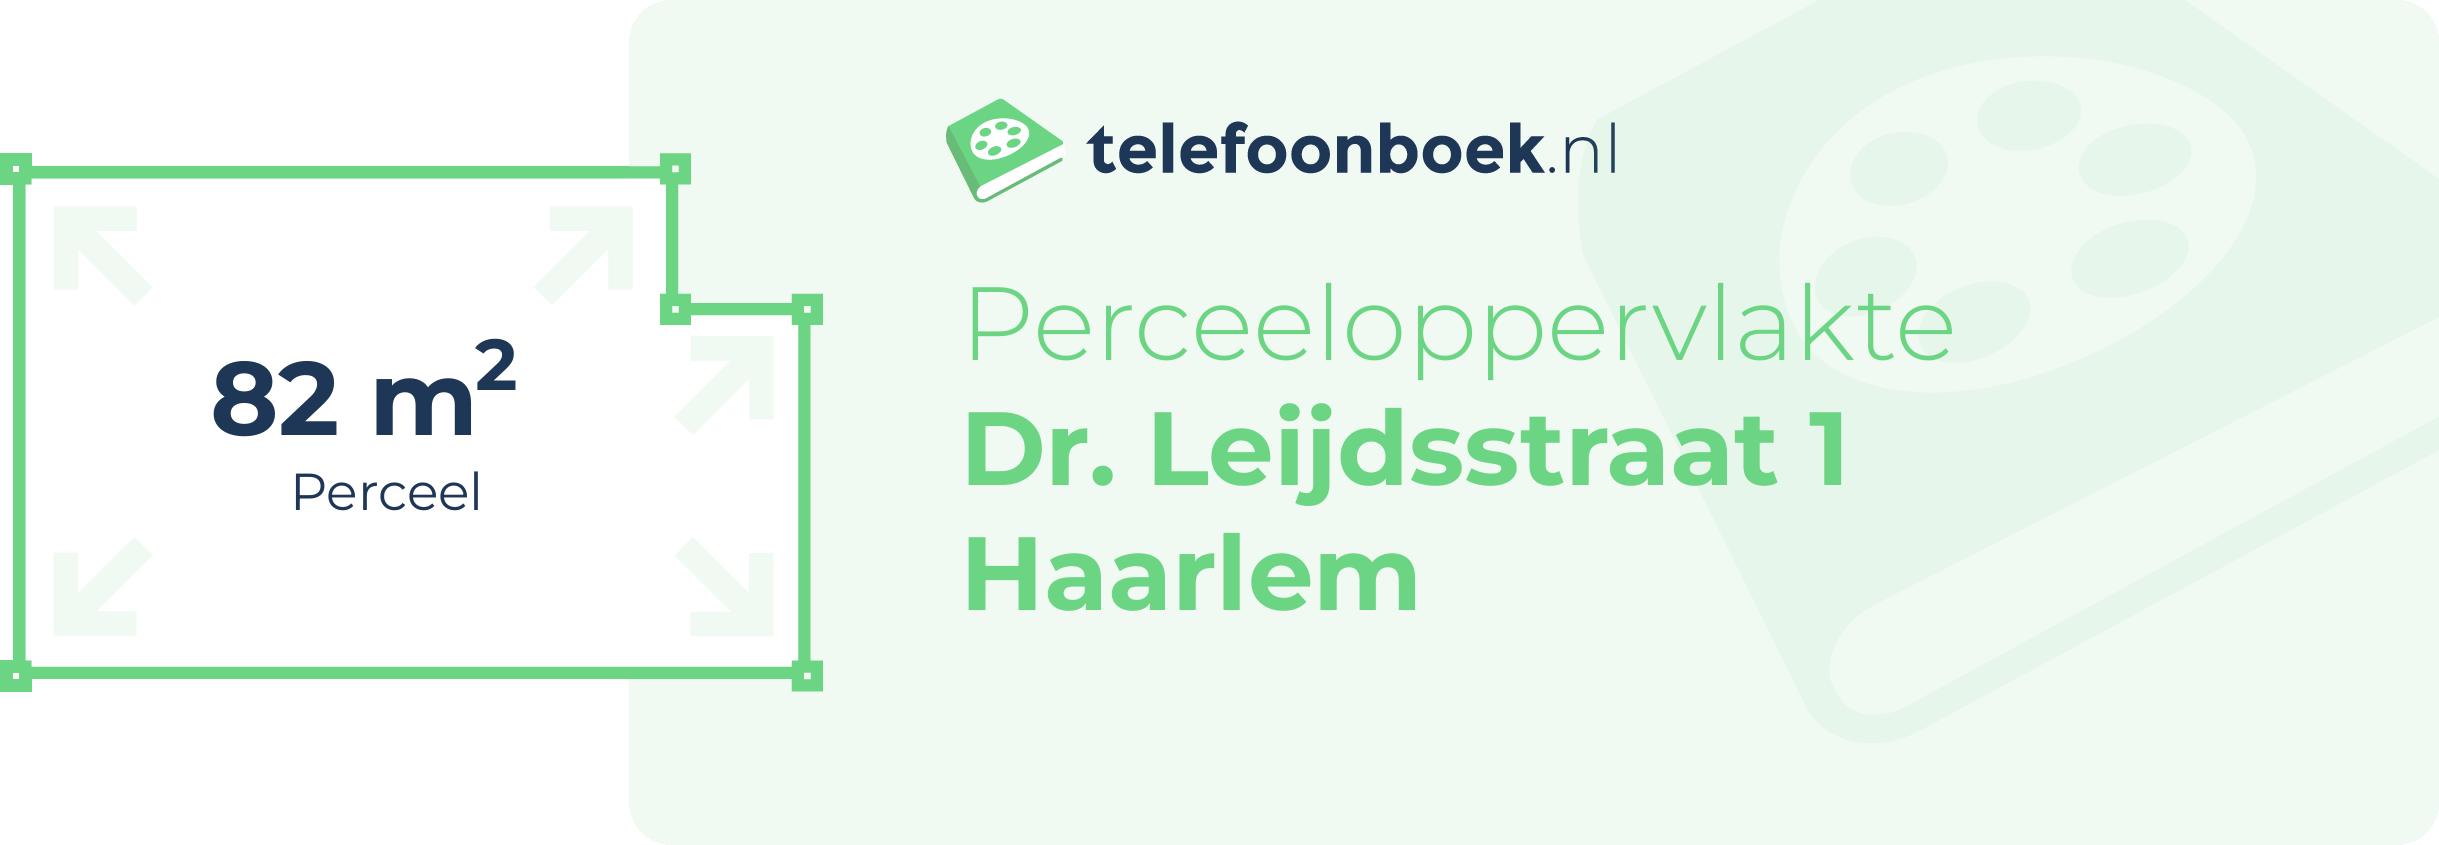 Perceeloppervlakte Dr. Leijdsstraat 1 Haarlem